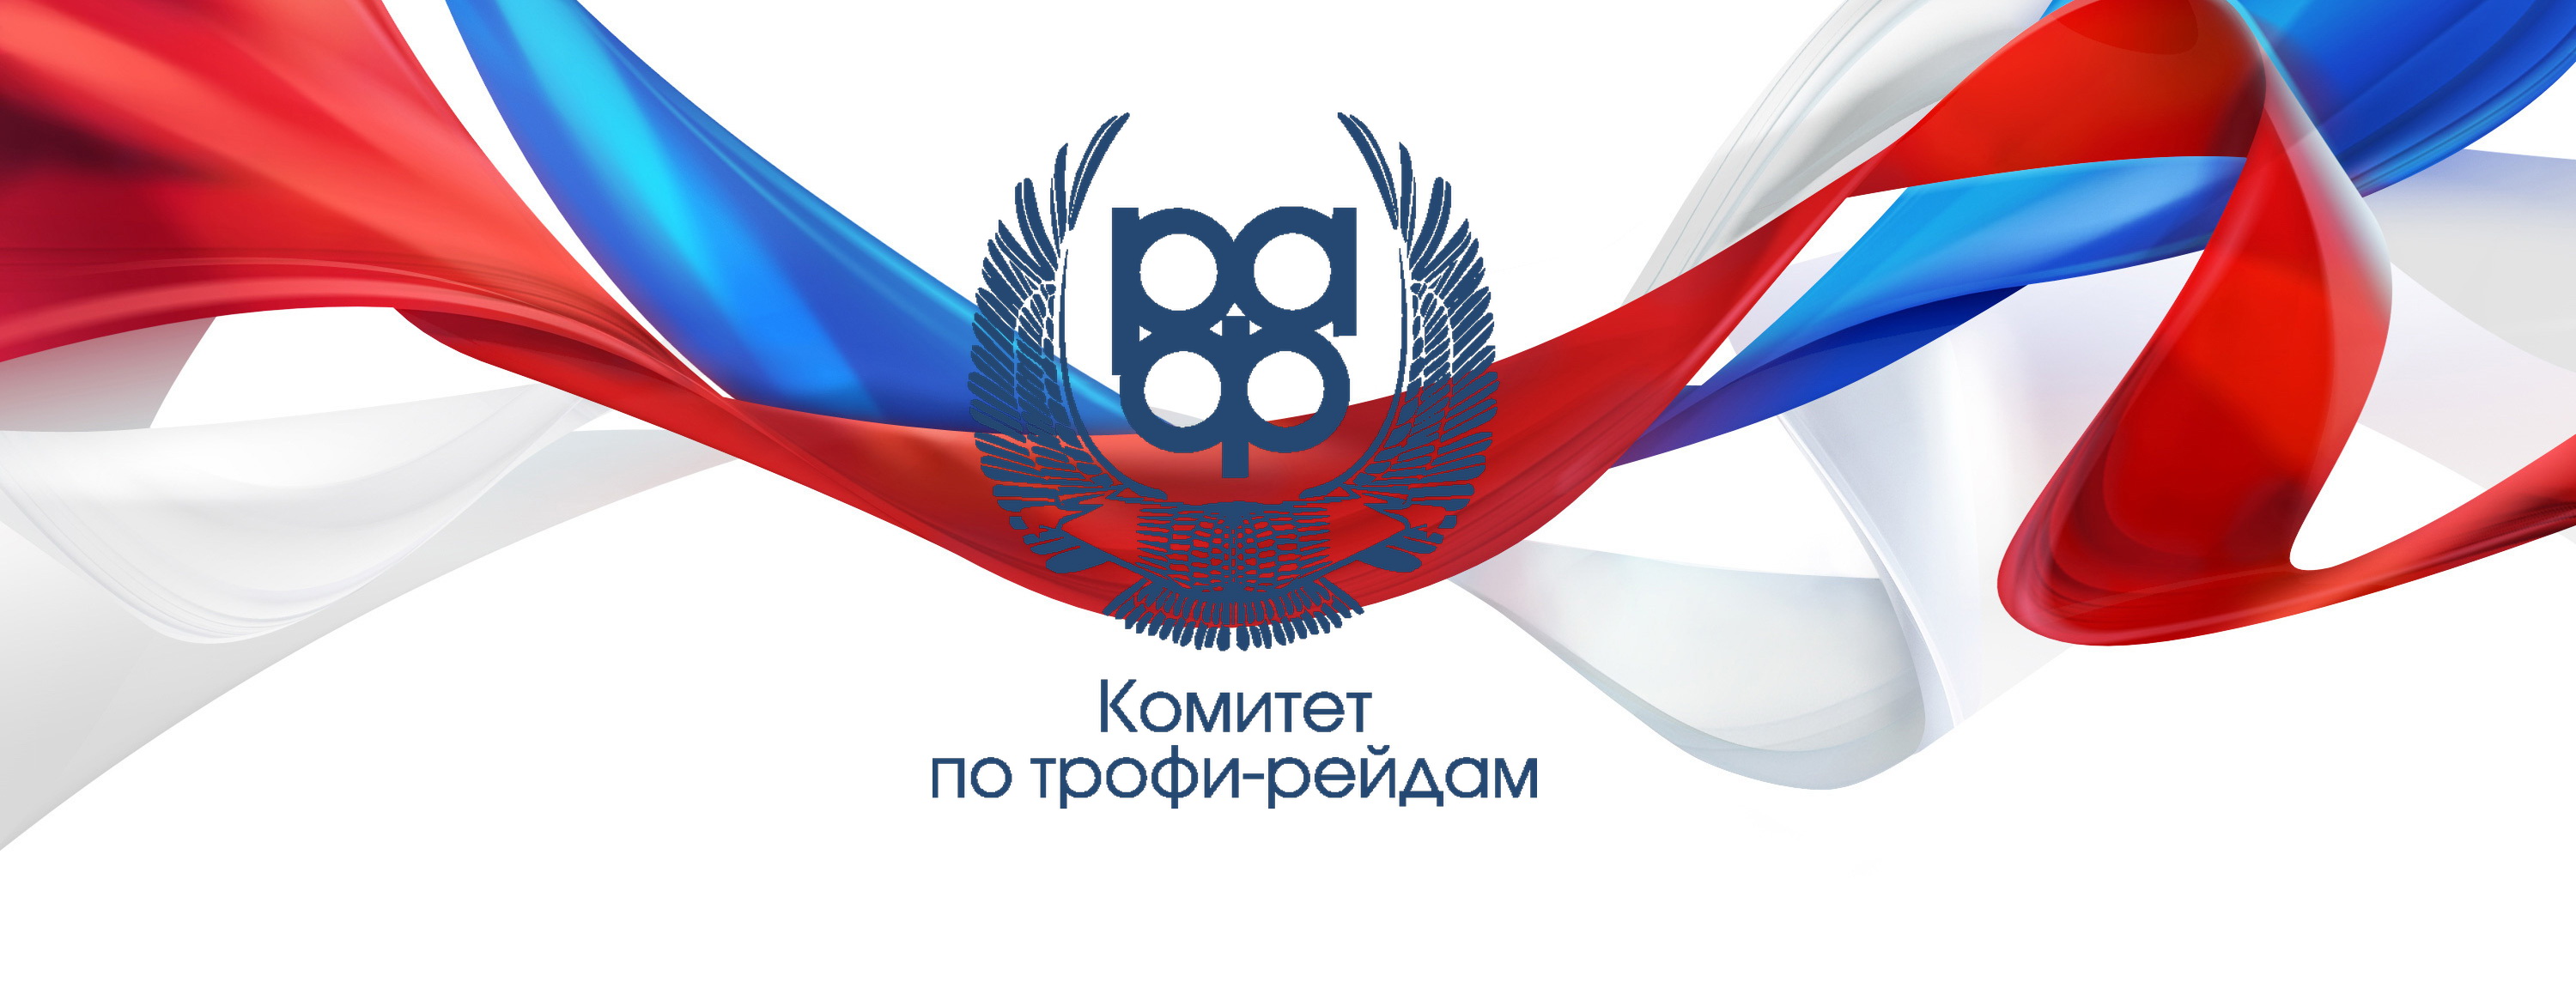 Регистрация участников 3-го этапа Чемпионата России. Регламент